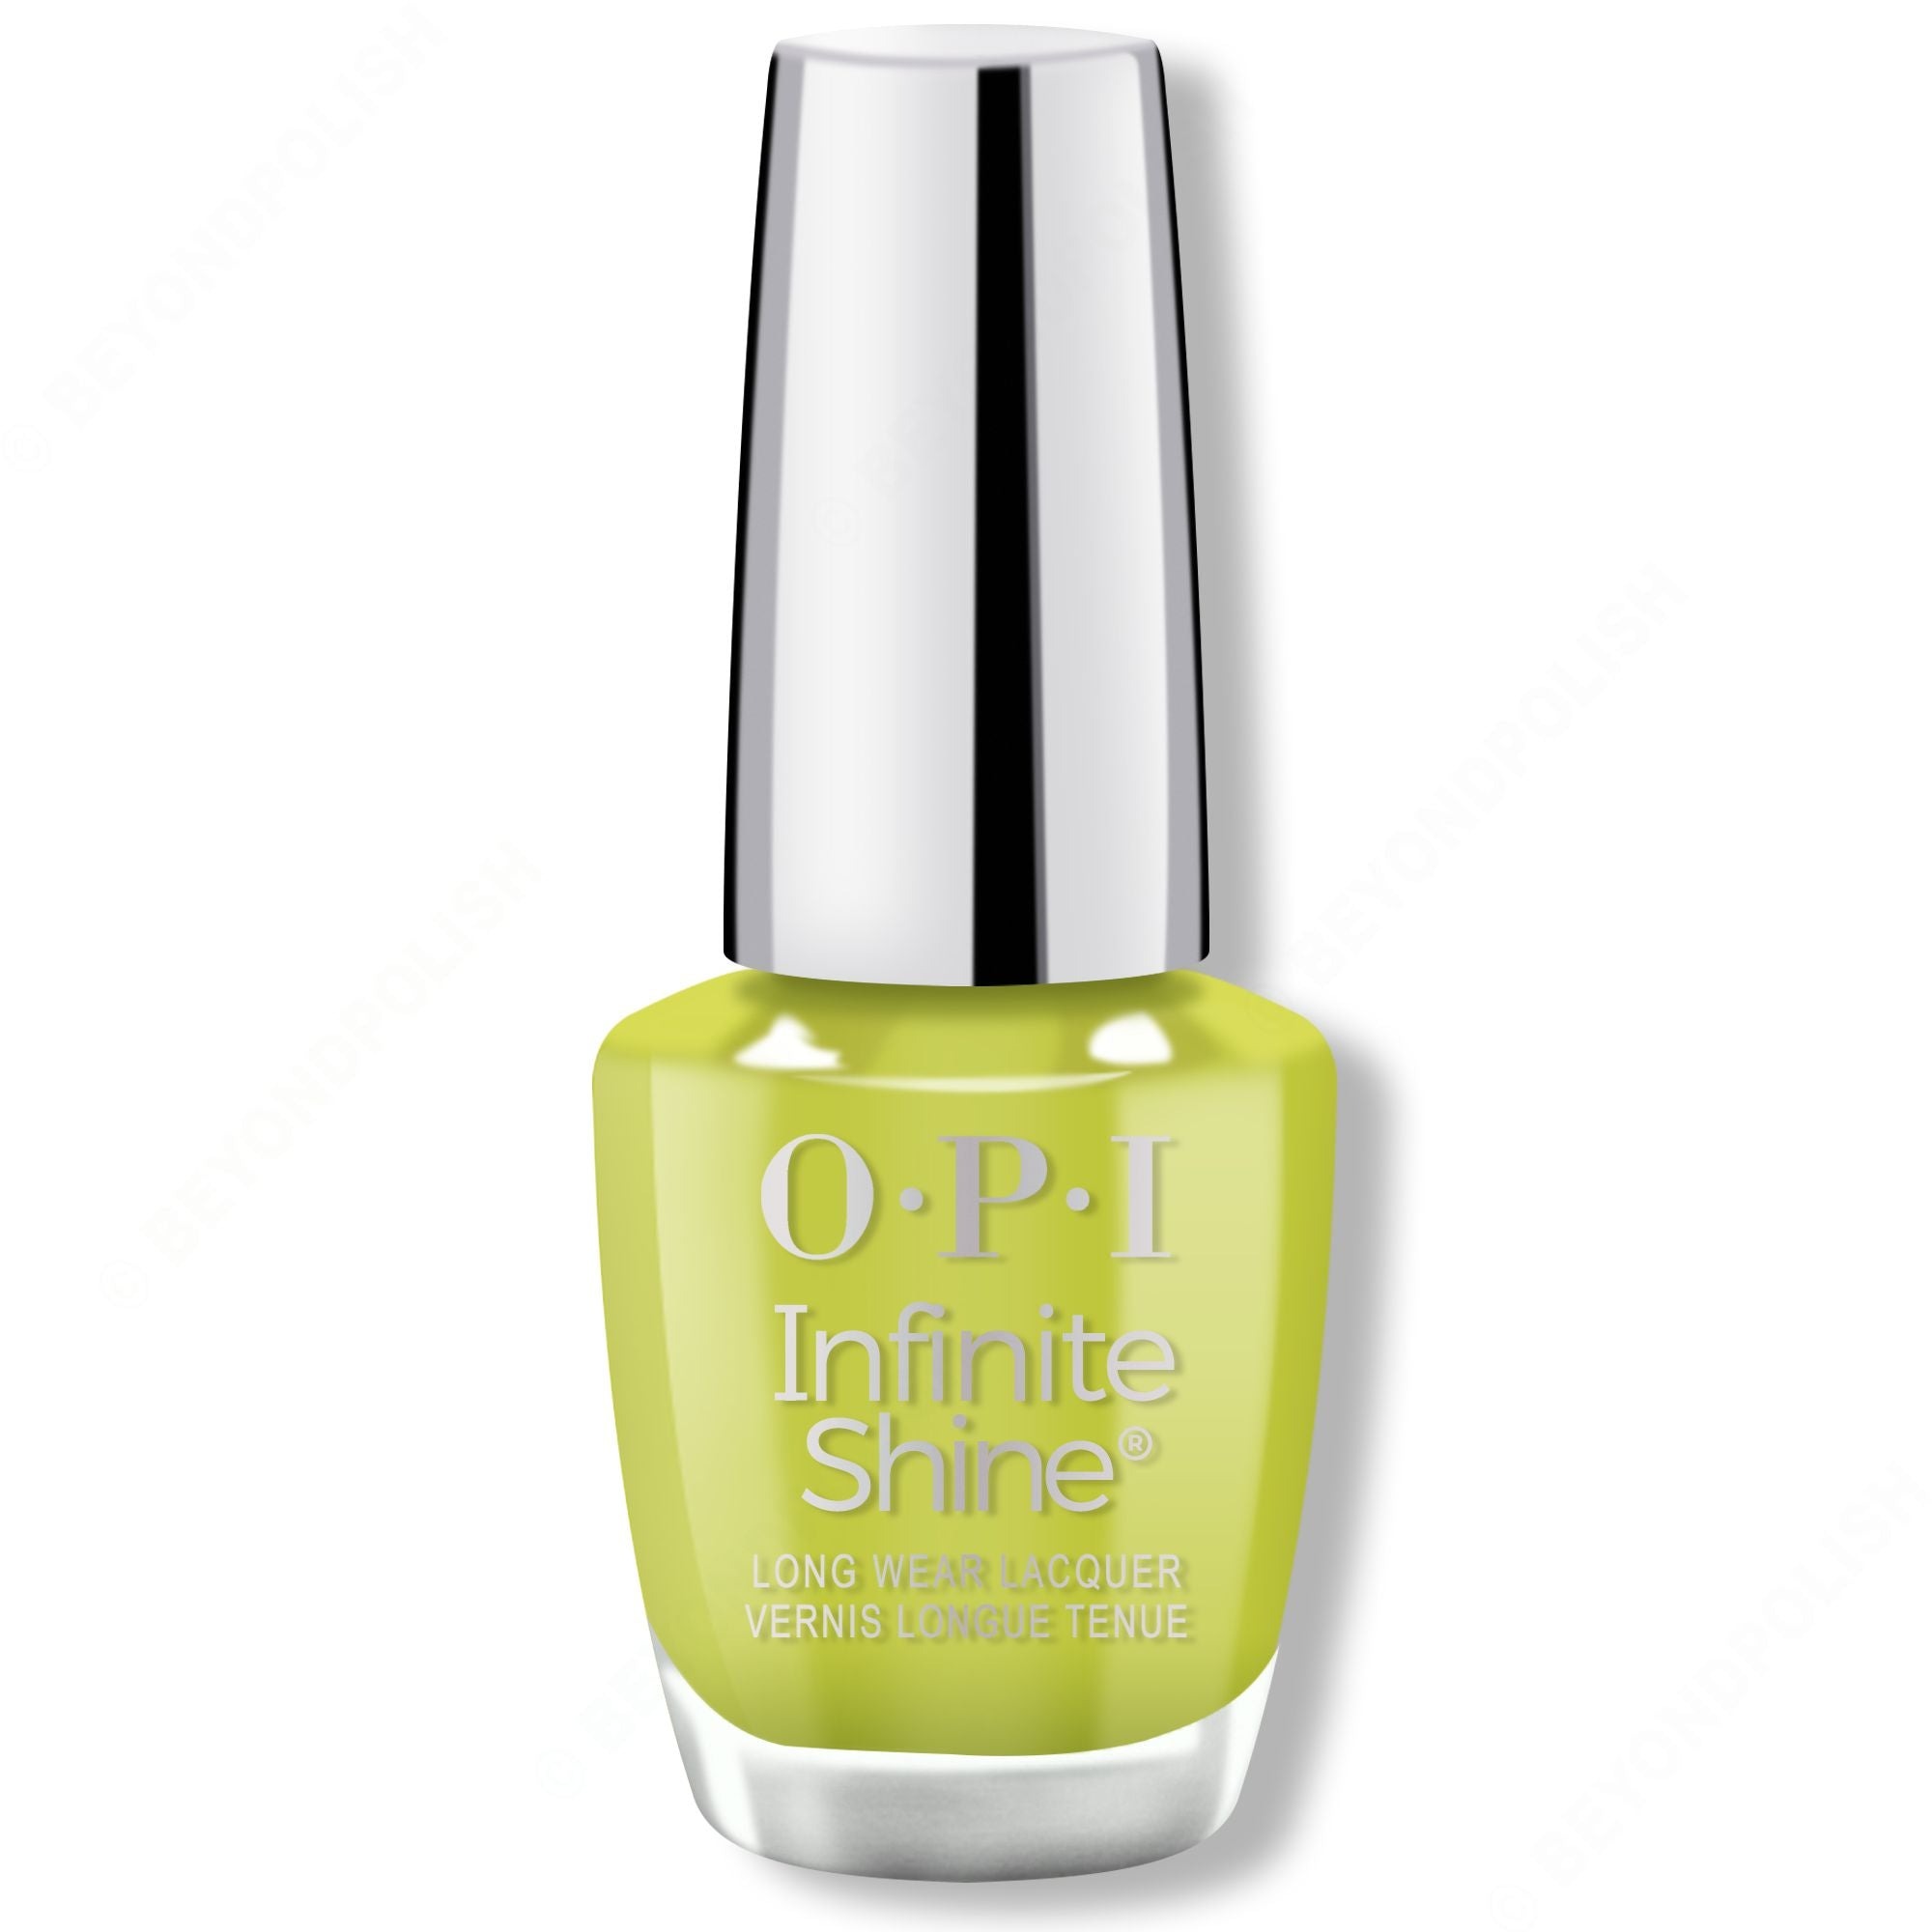 OPI Infinite Shine Nail Polish in Get In Lime